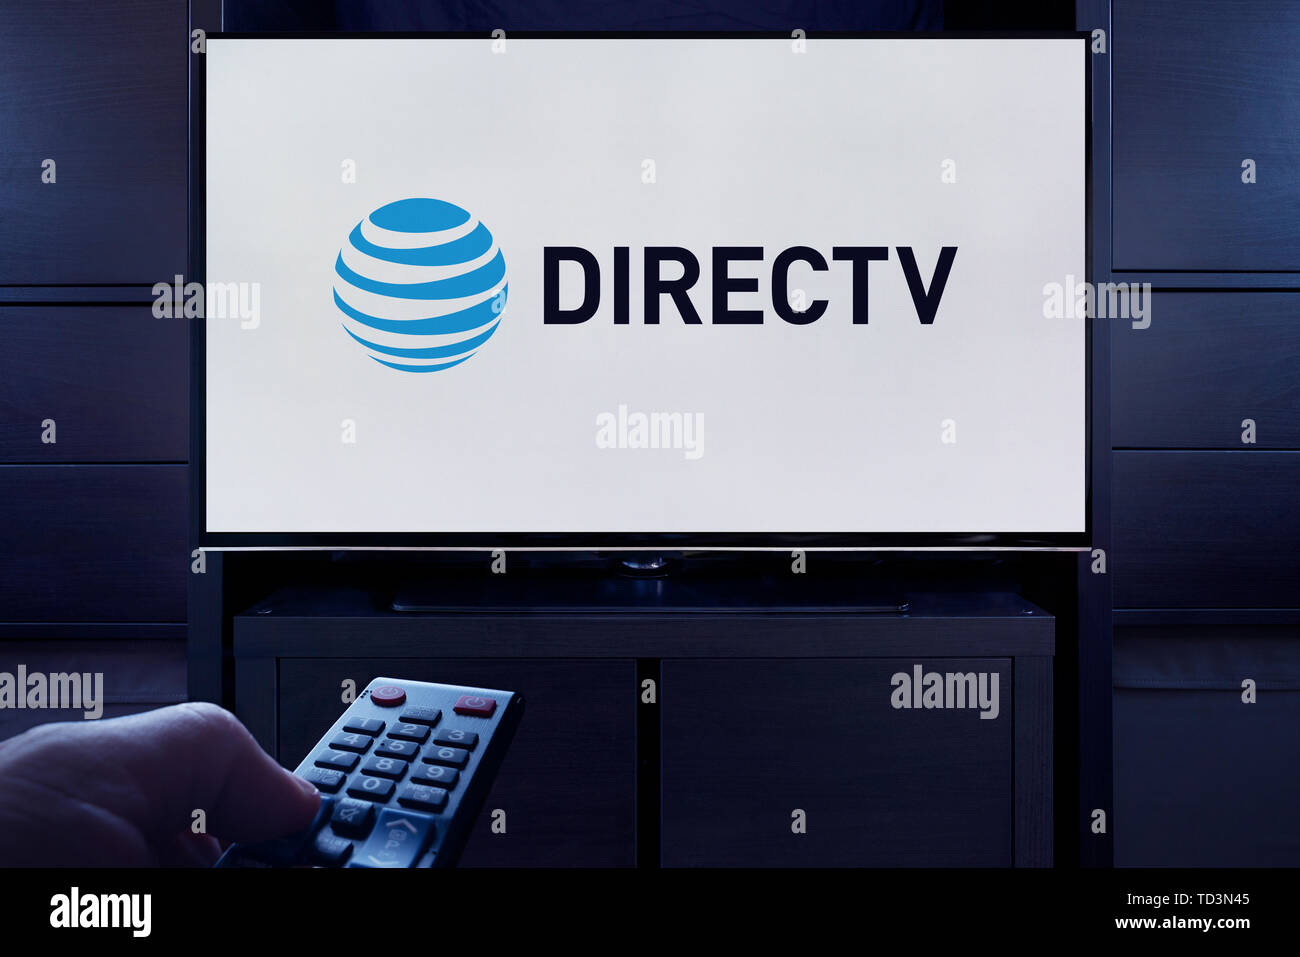 Un hombre apunta un control remoto de la televisión en la televisión que muestra el logotipo de DirecTV on demand video streaming service (uso Editorial solamente). Foto de stock